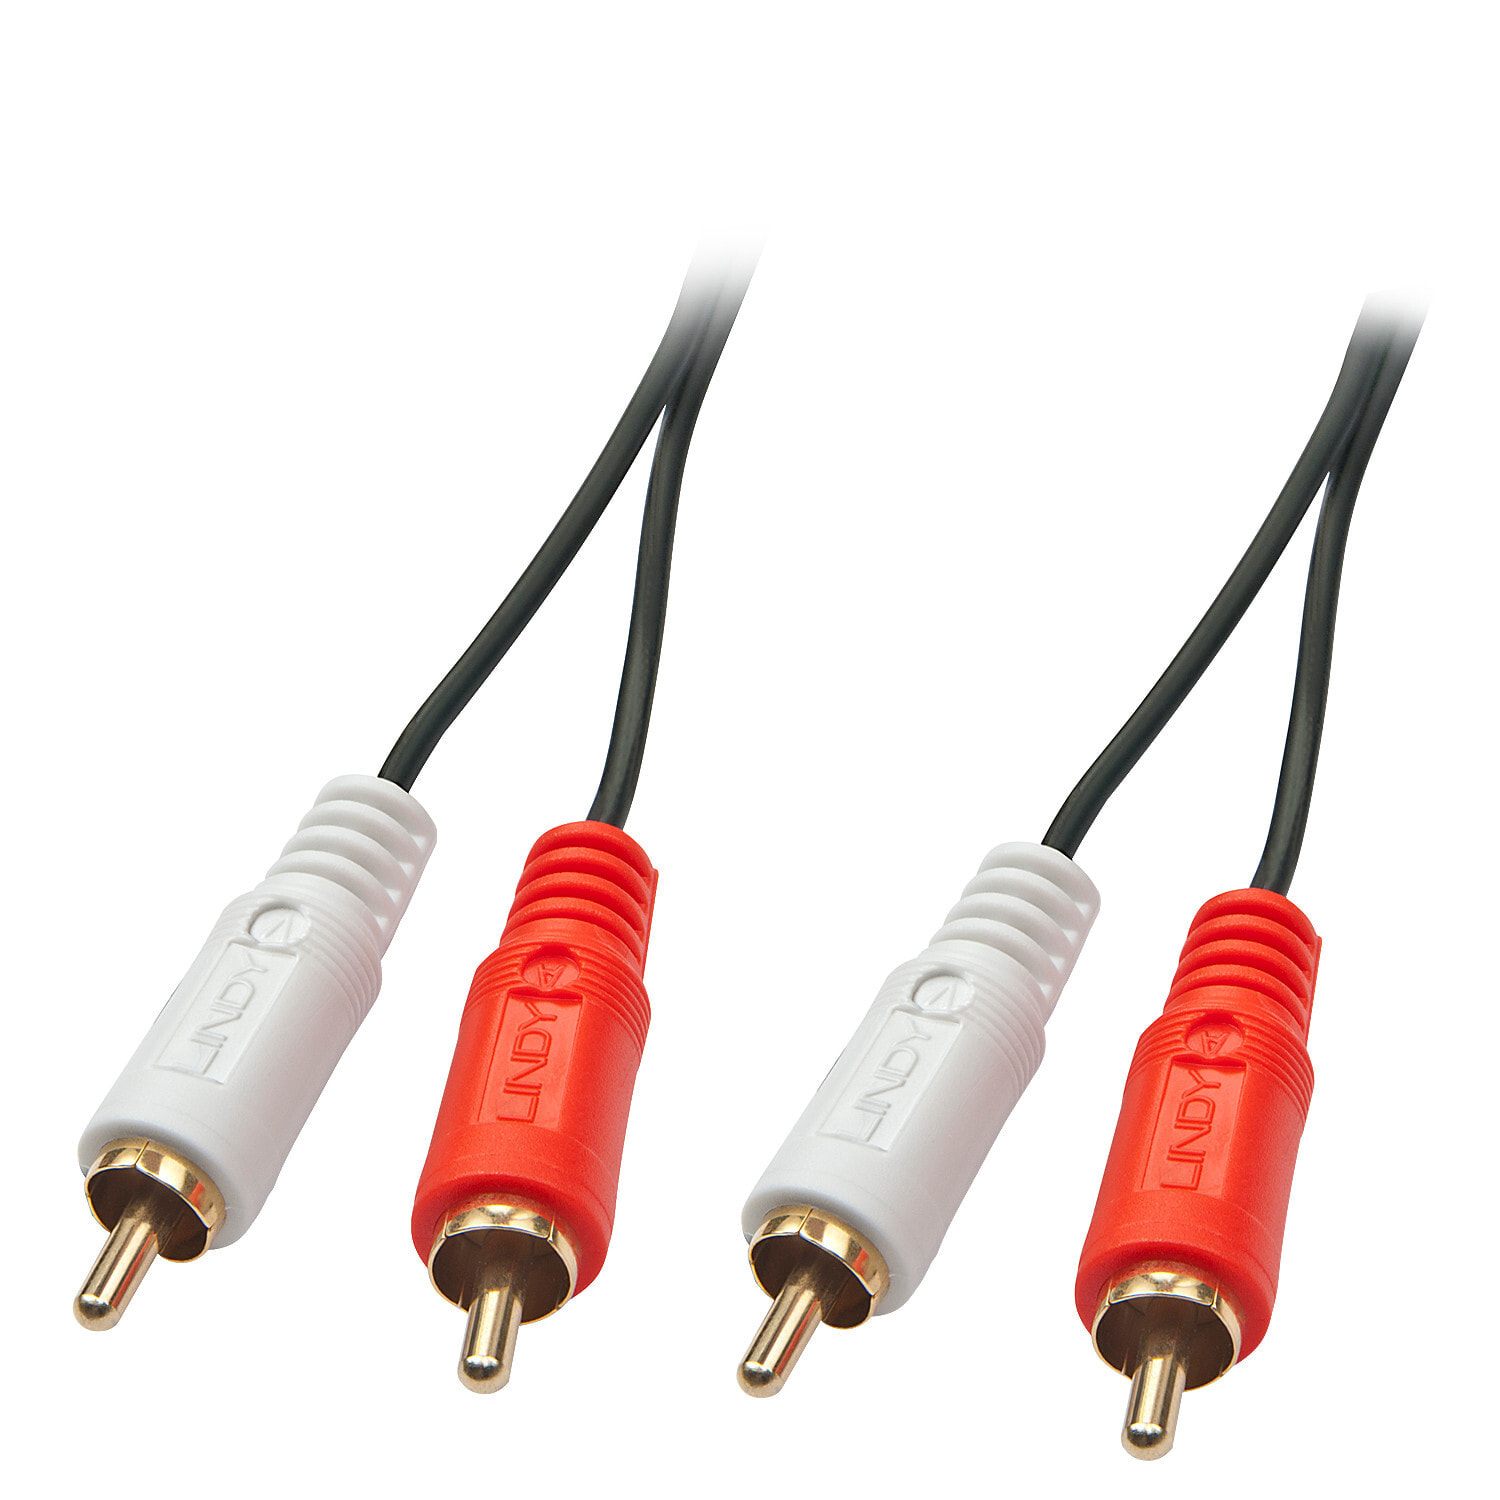 Lindy 35662 аудио кабель 3 m 2 x RCA Черный, Красный, Белый